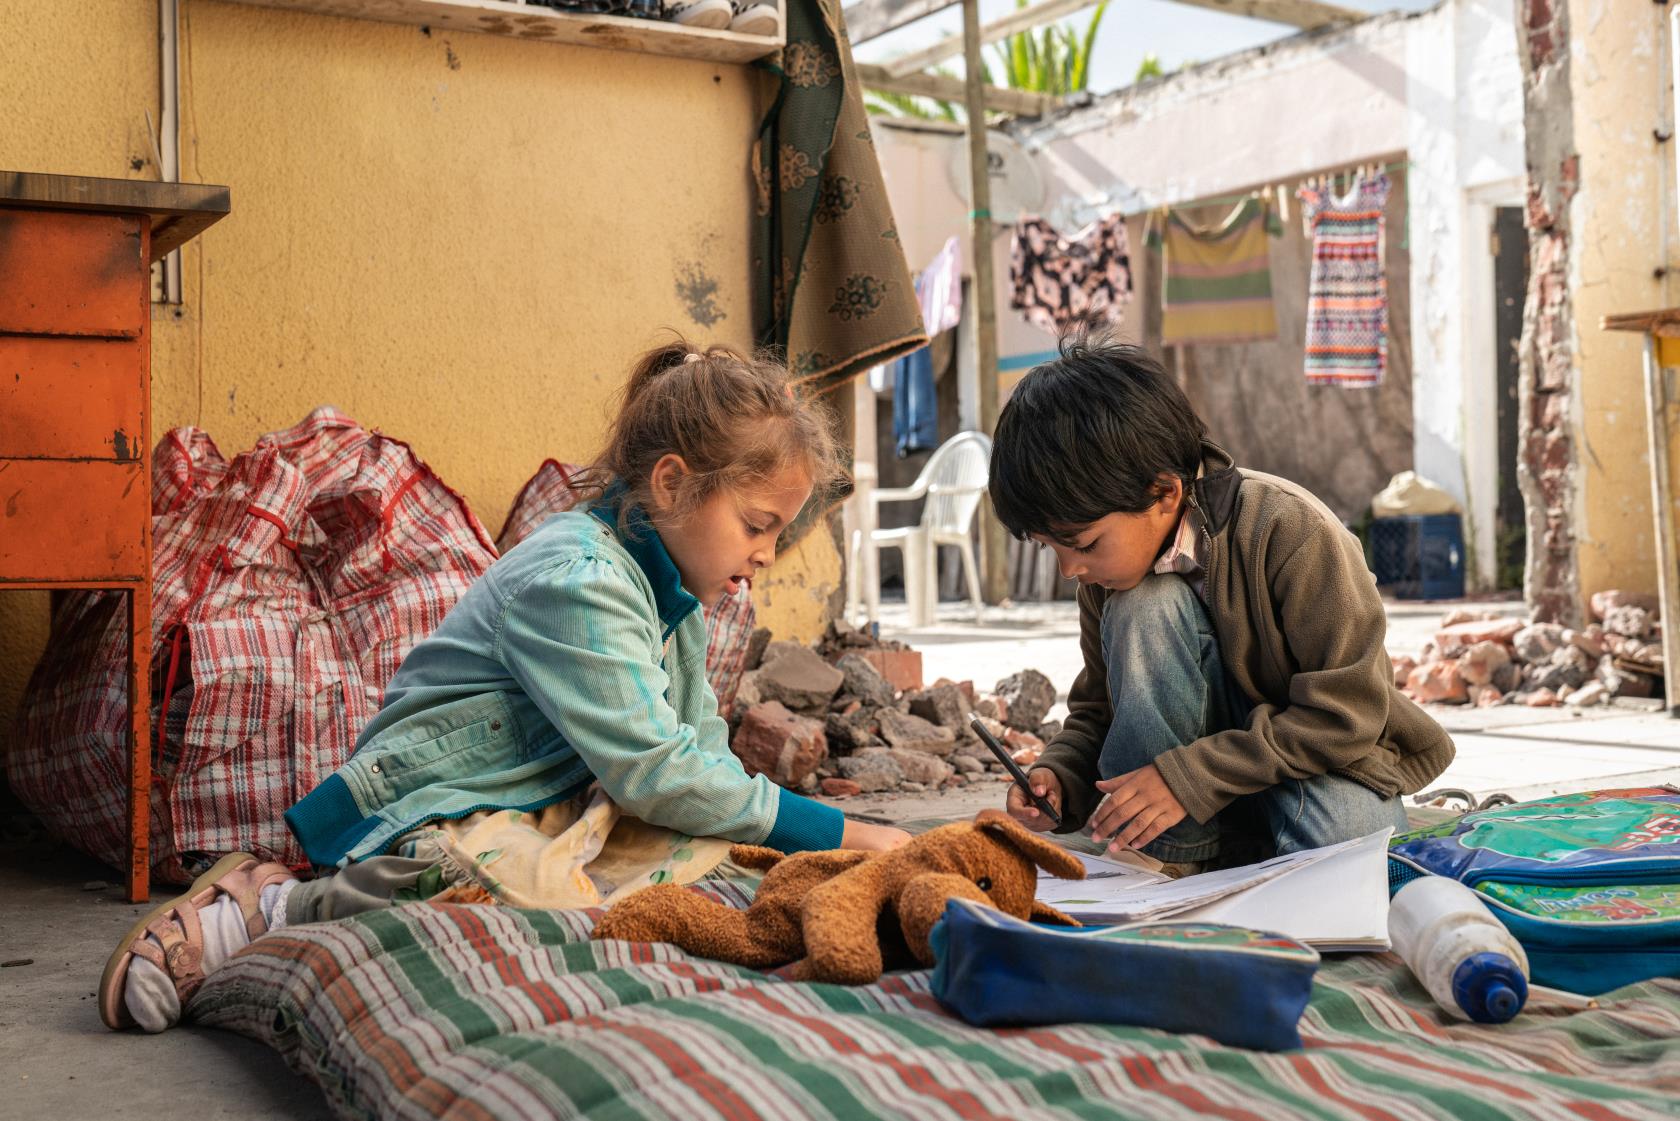 Två barn sitter på golvet på en madrass och skriver. Framför dem ligger skolböcker och en nalle.